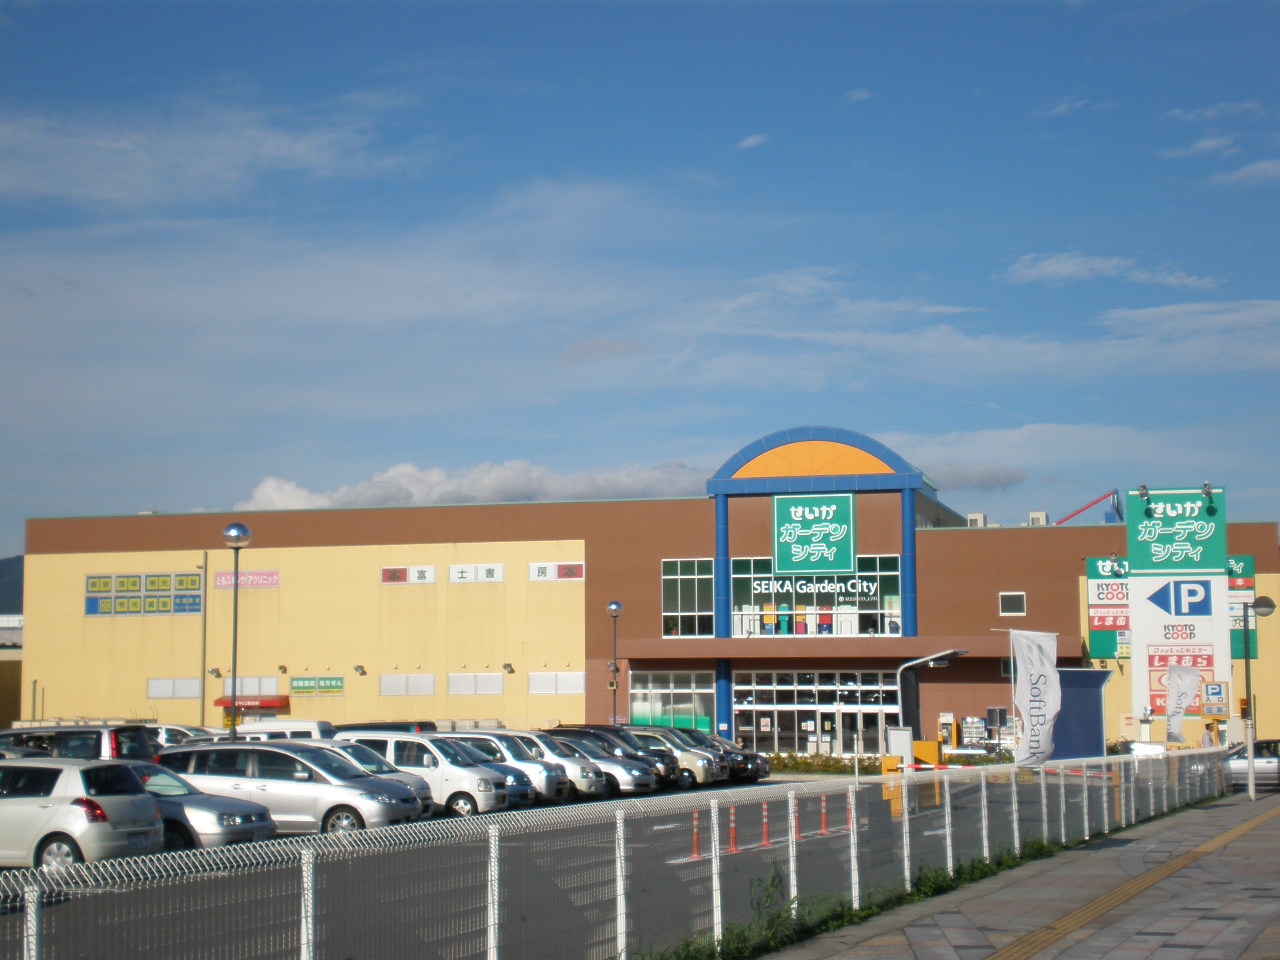 Shopping centre. 387m until the outcome Garden City (shopping center)